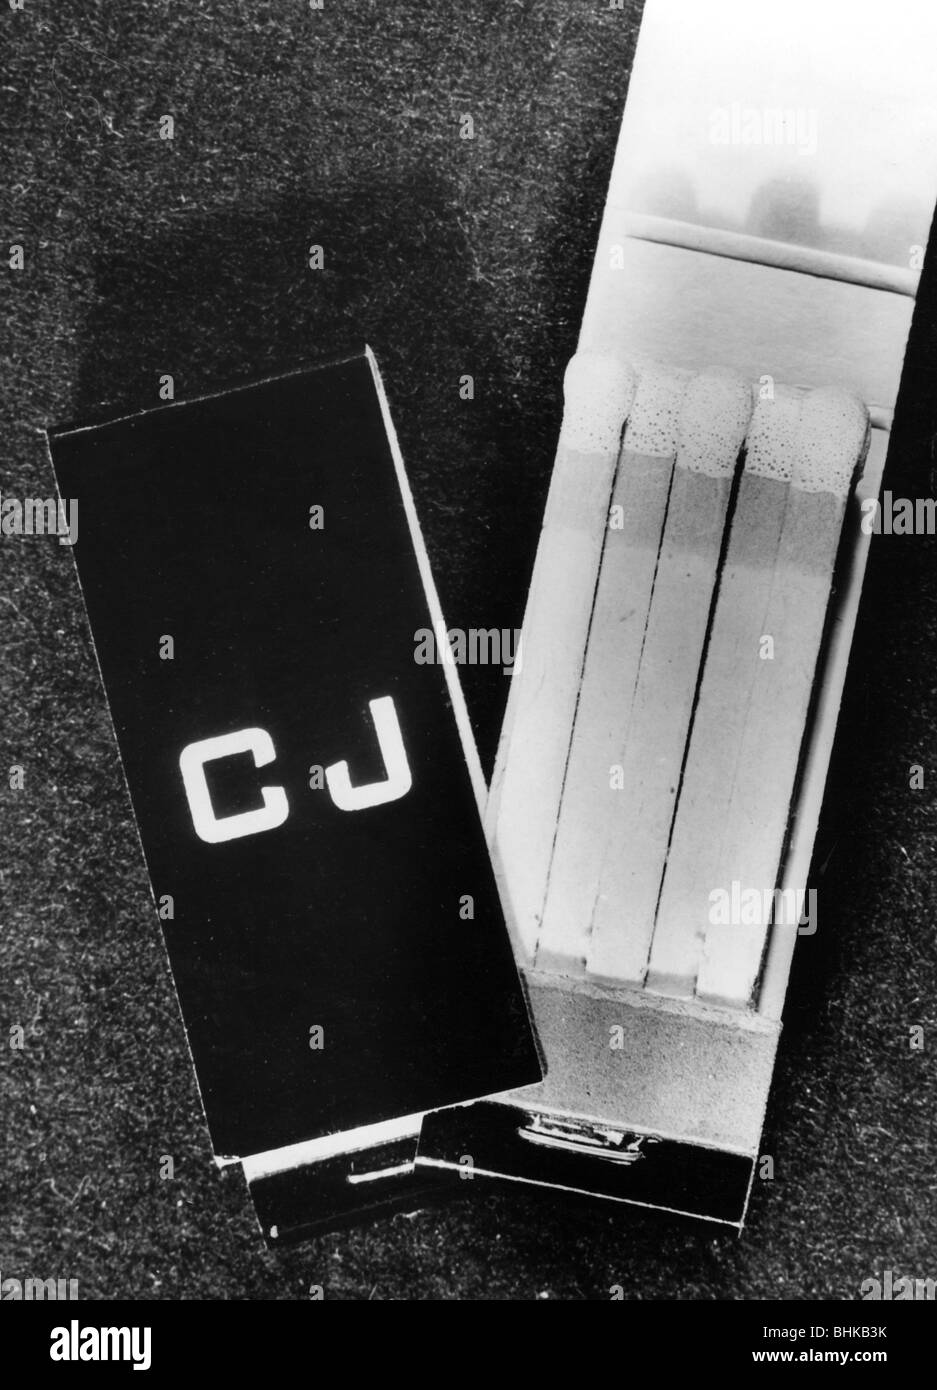 Juergens, Curd, 13.12.15 - 18.6.1982, deutscher Schauspieler, Streichholzschachtel mit seinen Initialen, 1950er Jahre, Stockfoto